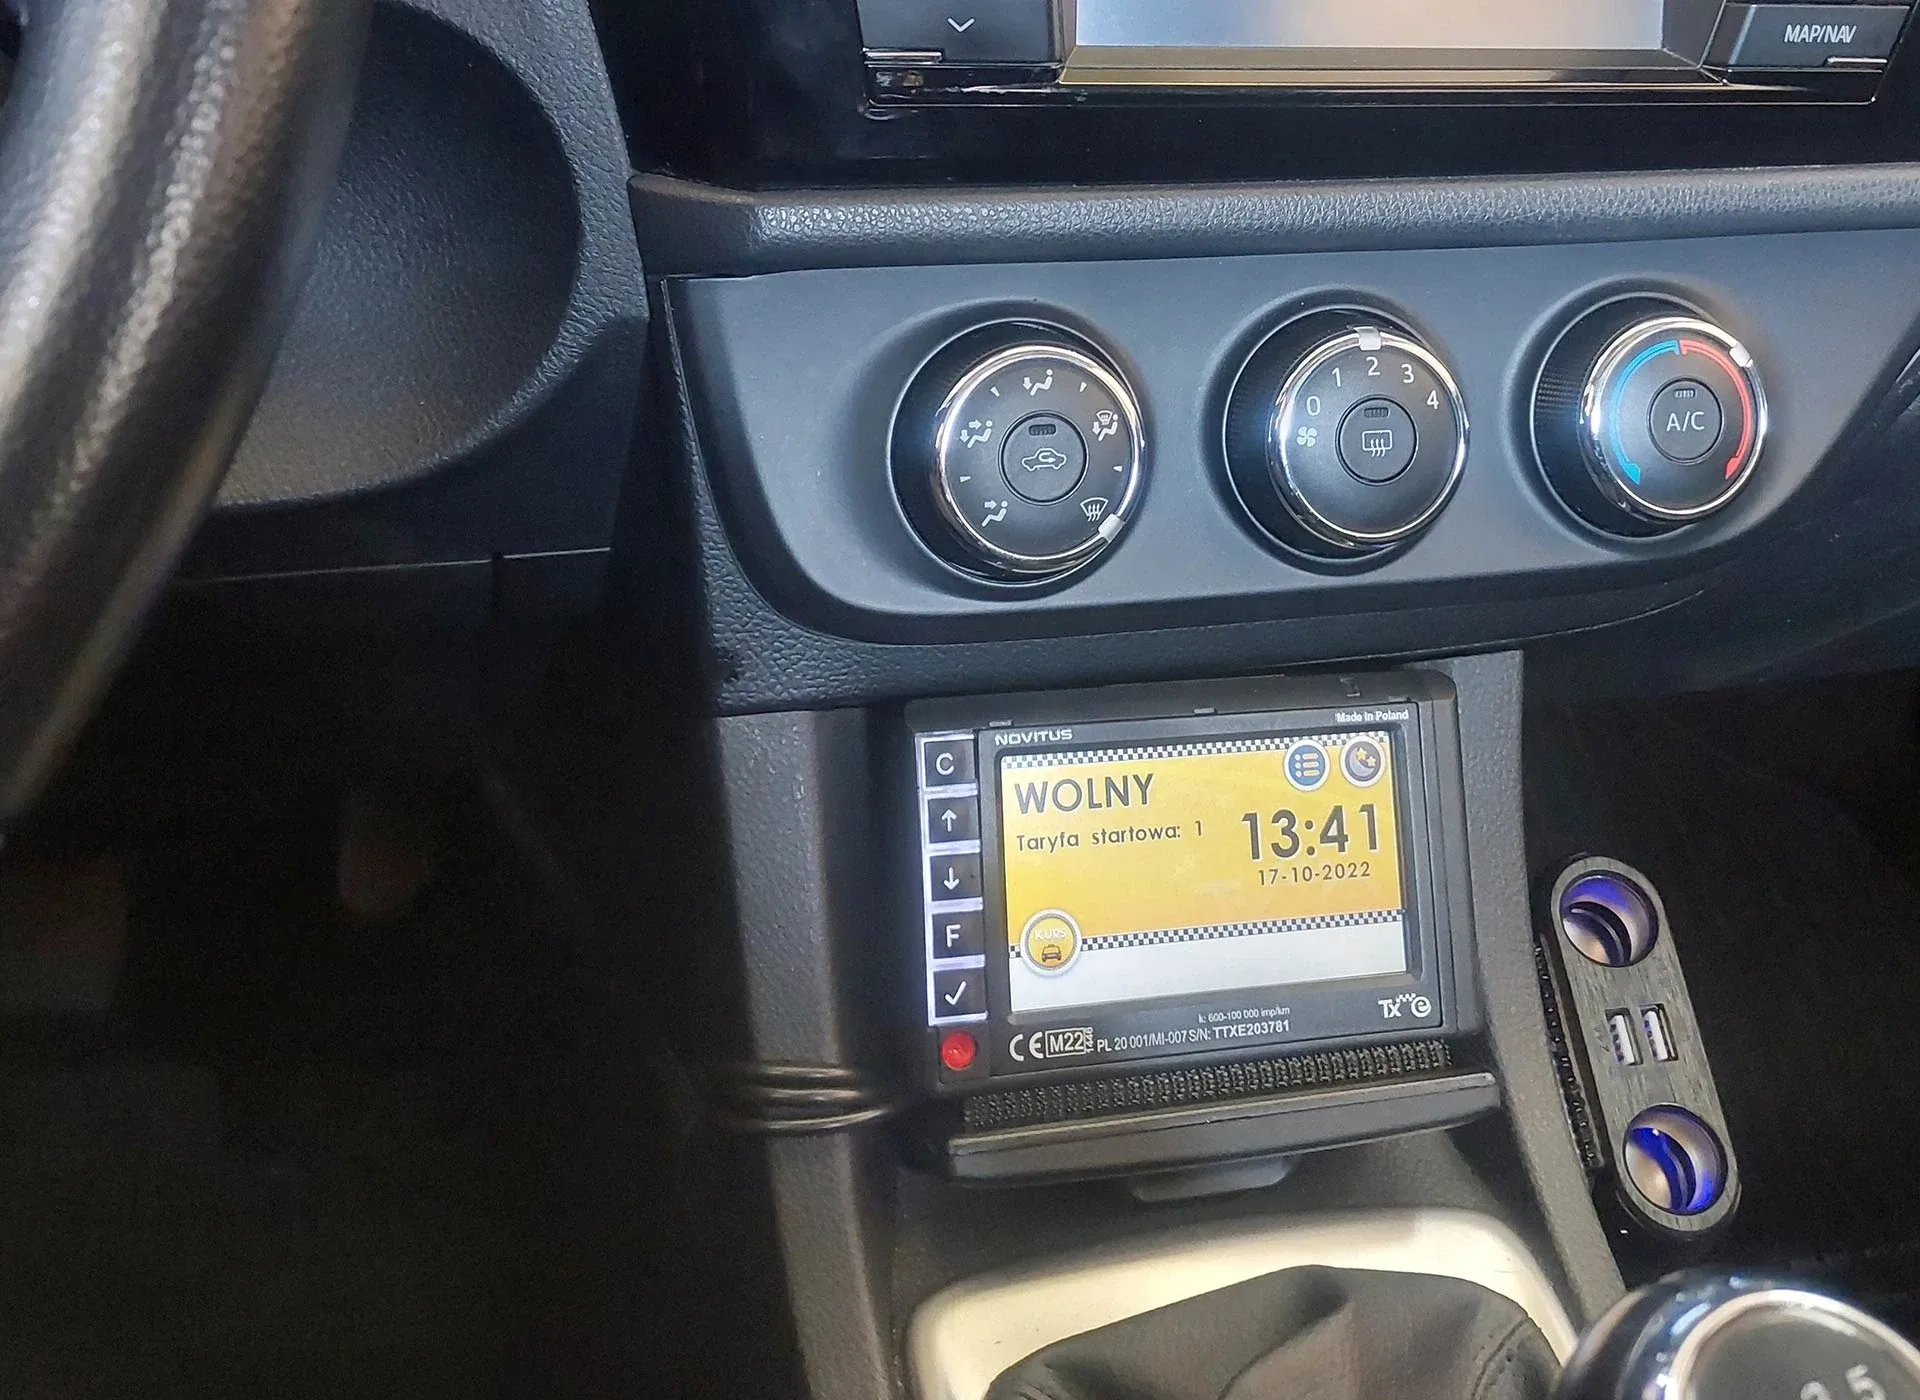 panel informacyjny w taksówce